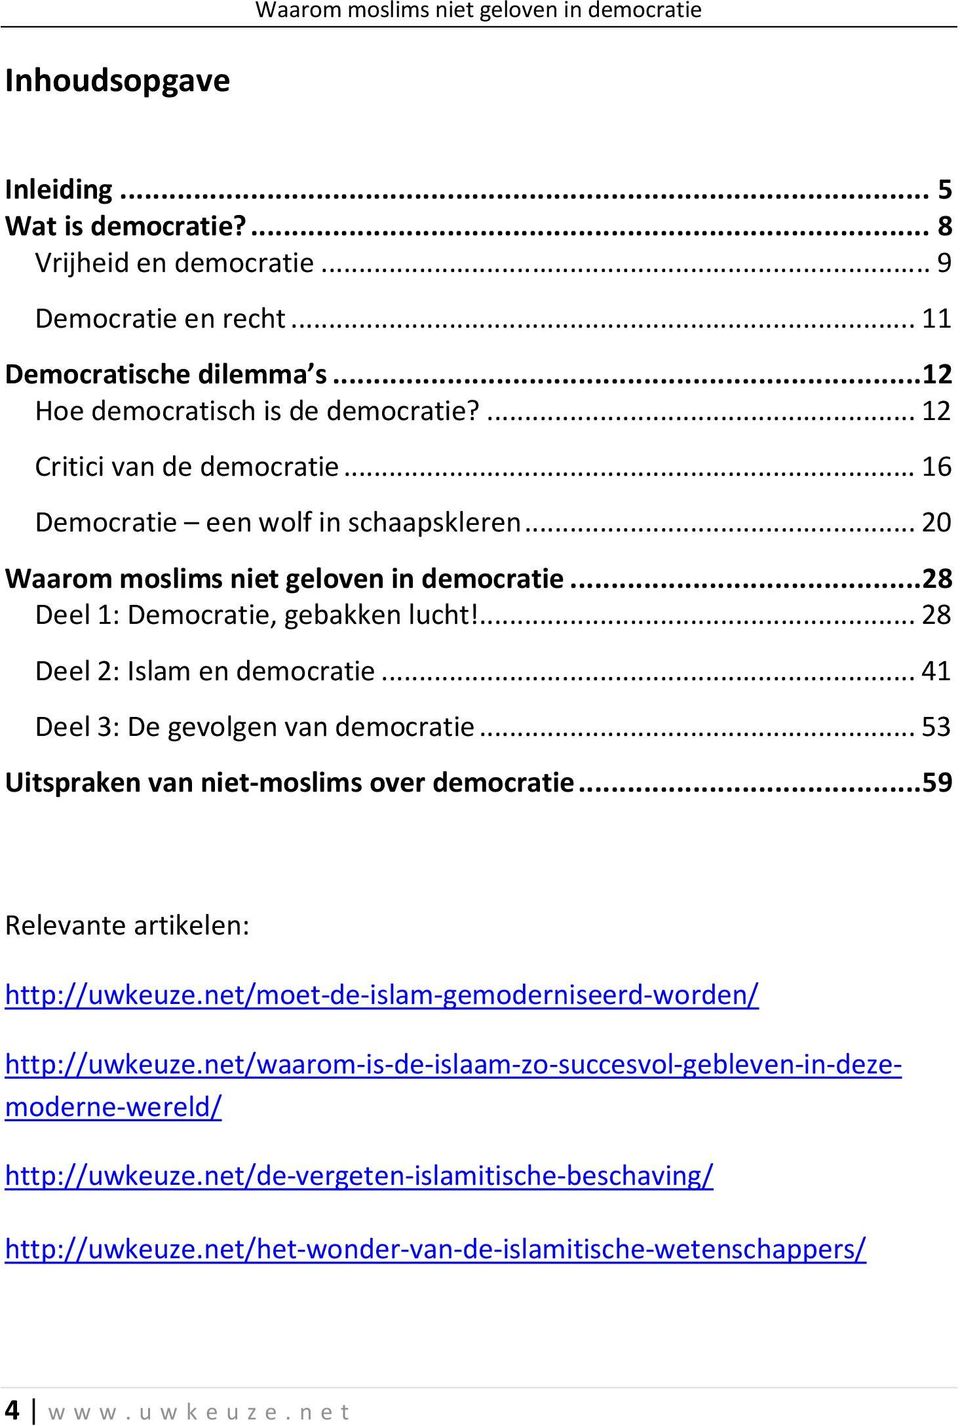 ... 28 Deel 2: Islam en democratie... 41 Deel 3: De gevolgen van democratie... 53 Uitspraken van niet-moslims over democratie... 59 Relevante artikelen: http://uwkeuze.